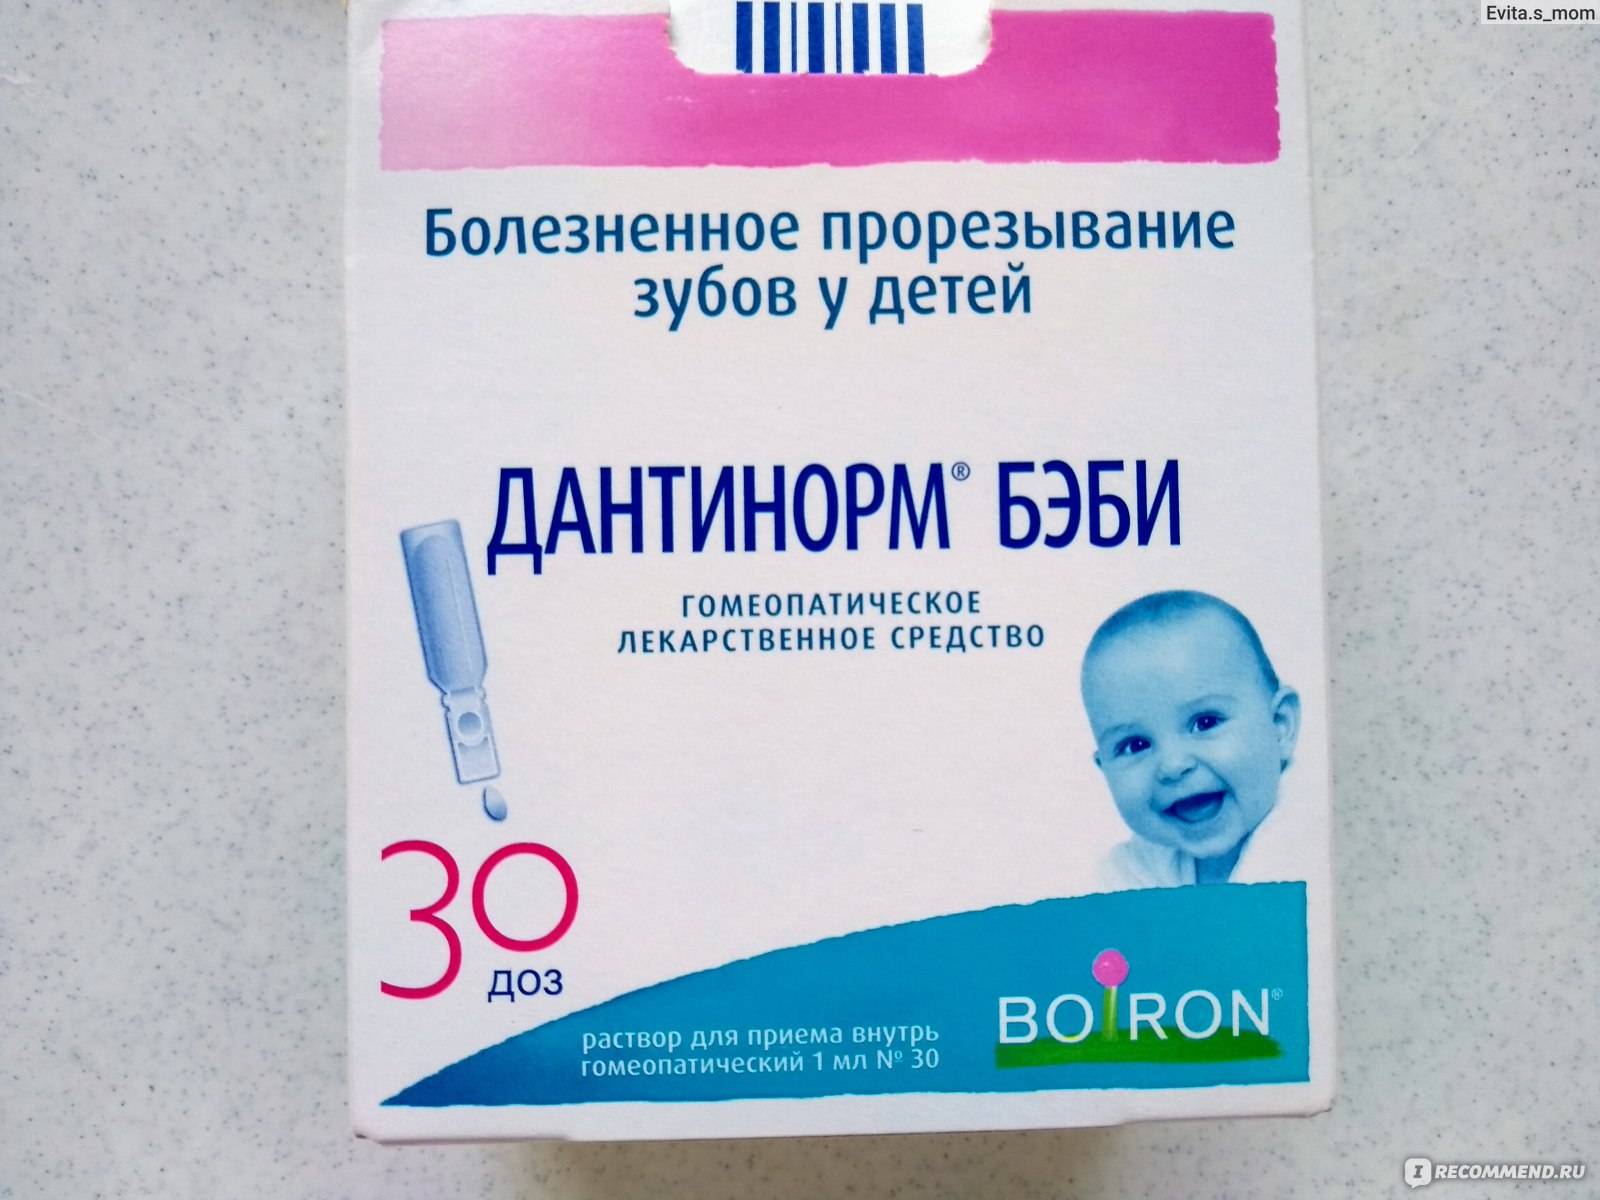 Дантинорм® бэби (dantinorm baby)